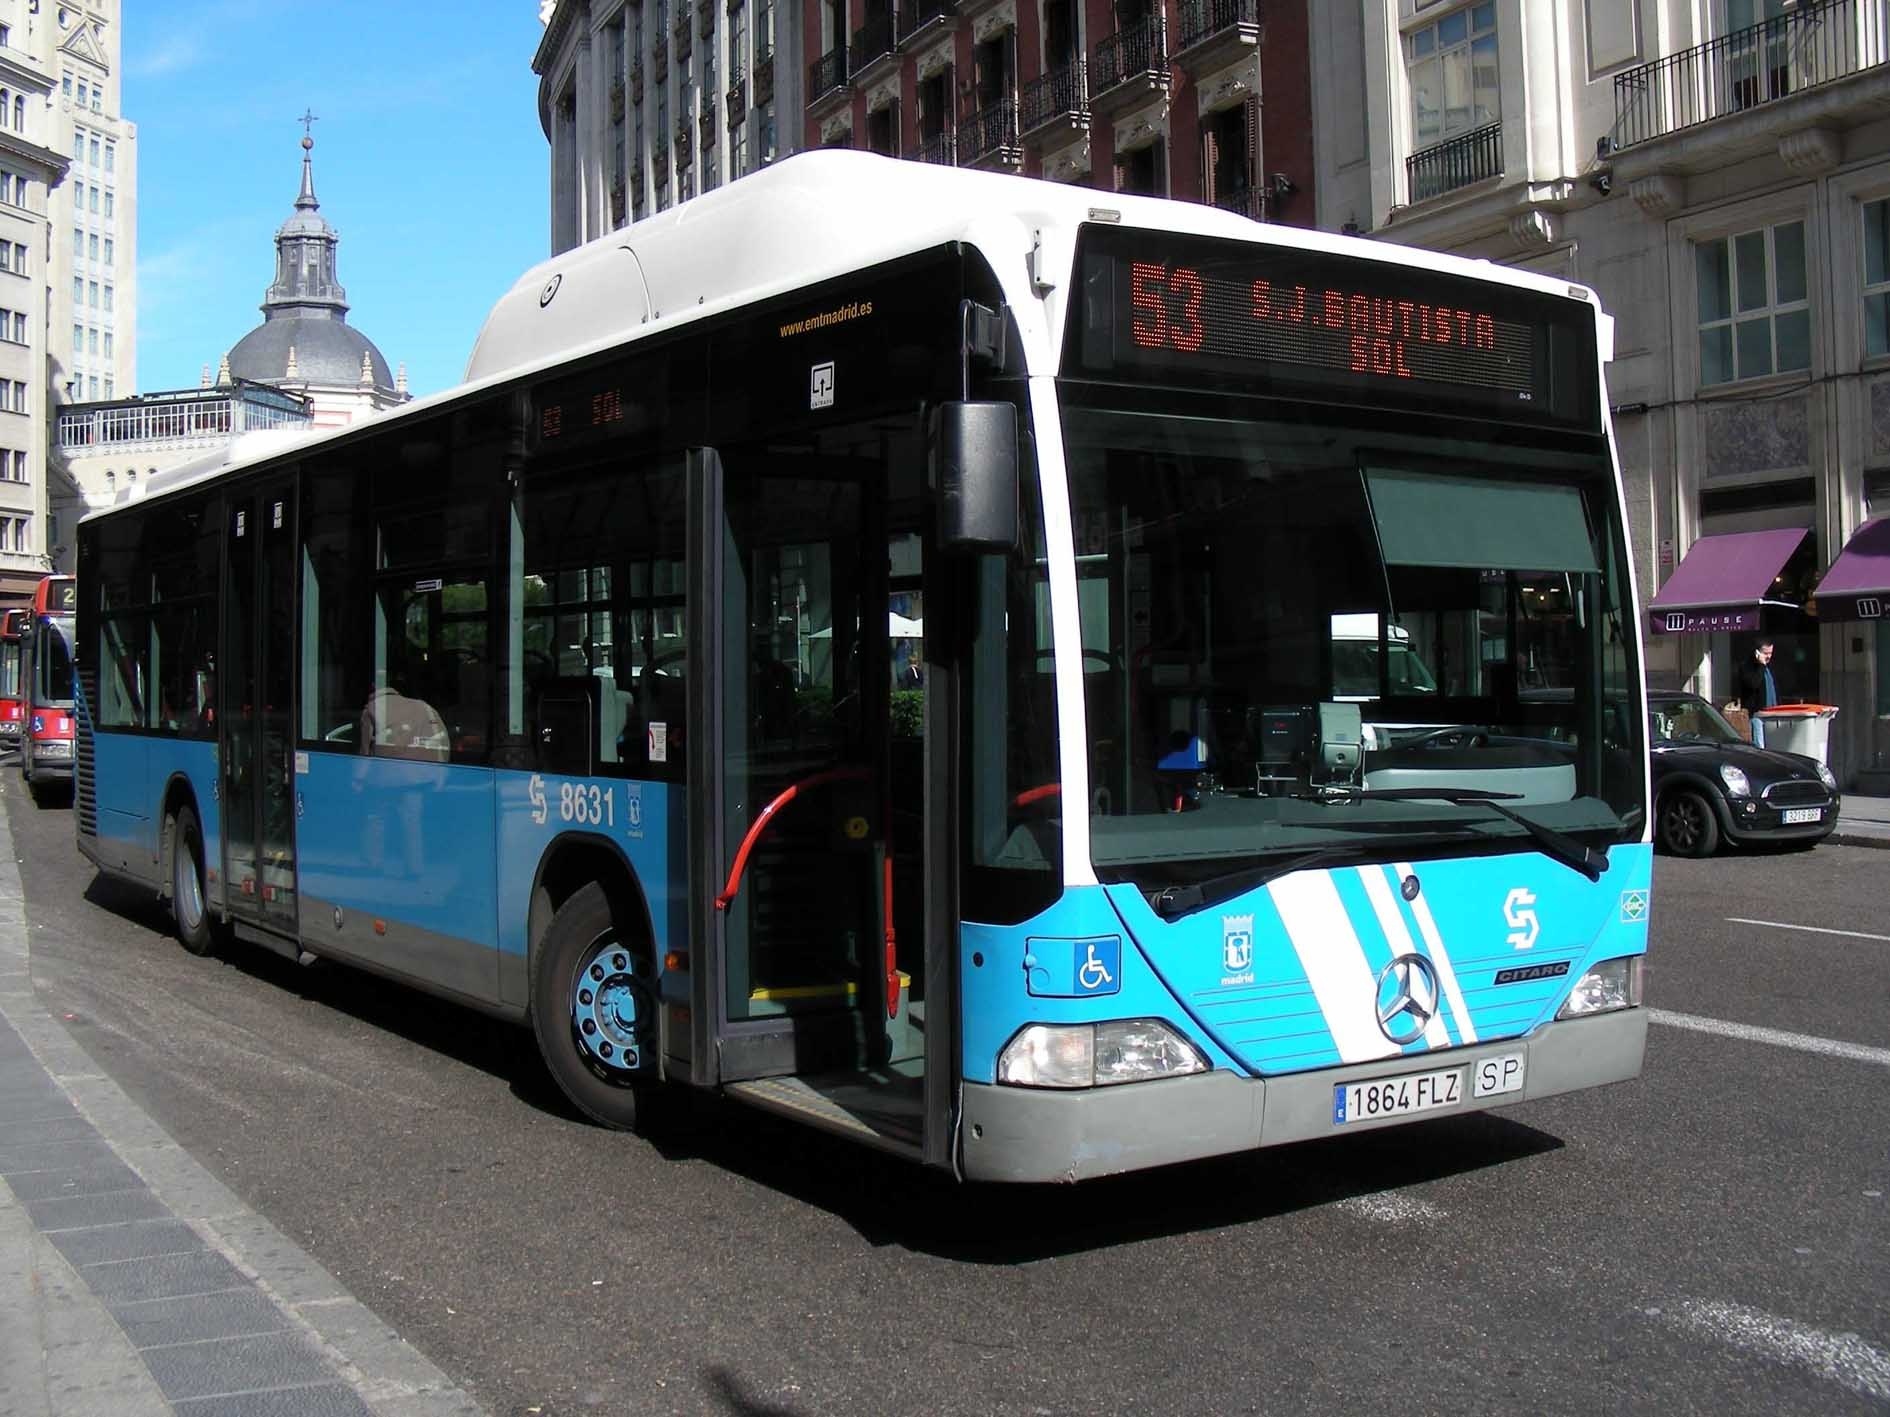 EMT prevé obtener en 2013 ingresos totales por valor de 531,1 millones de euros y adquirir 42 autobuses nuevos